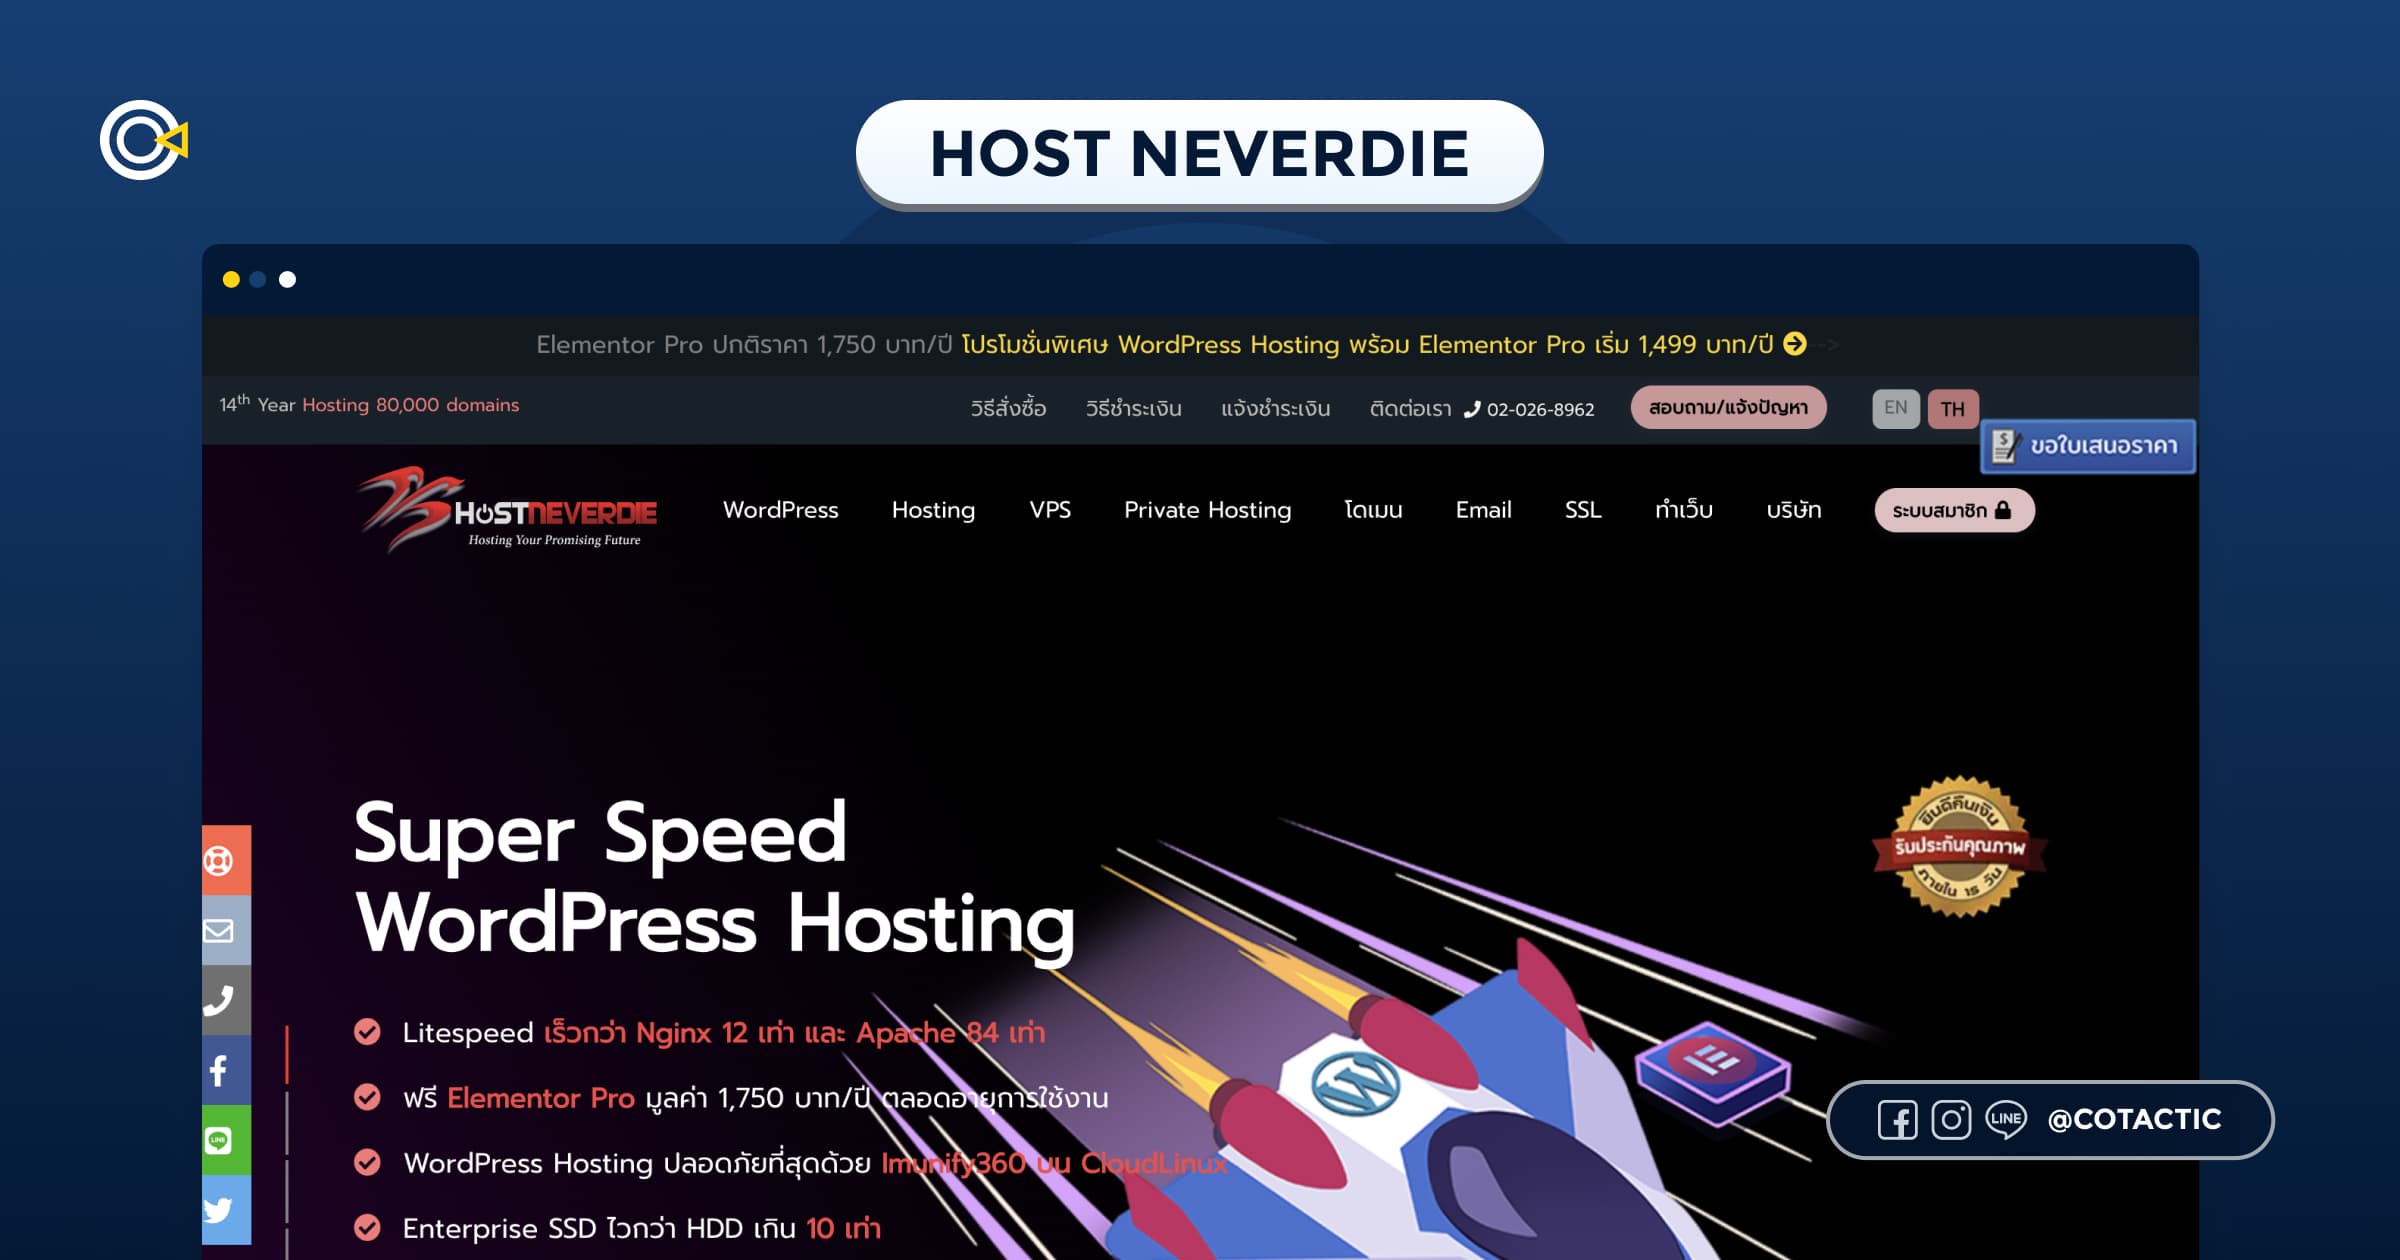 Host Neverdie